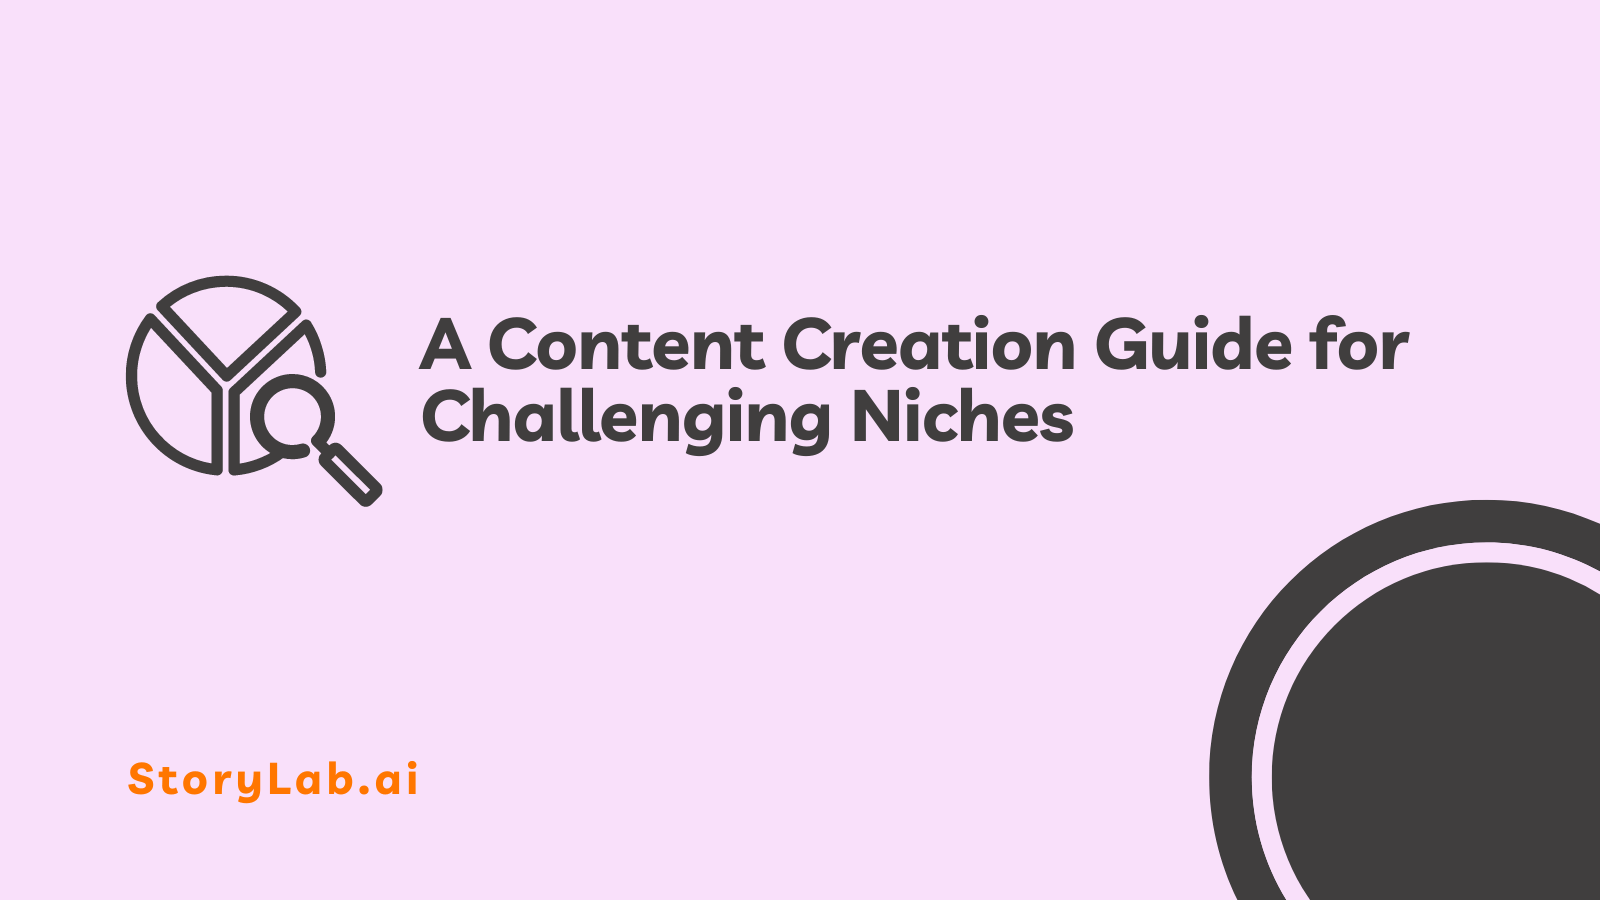 Um guia de criação de conteúdo para nichos desafiadores